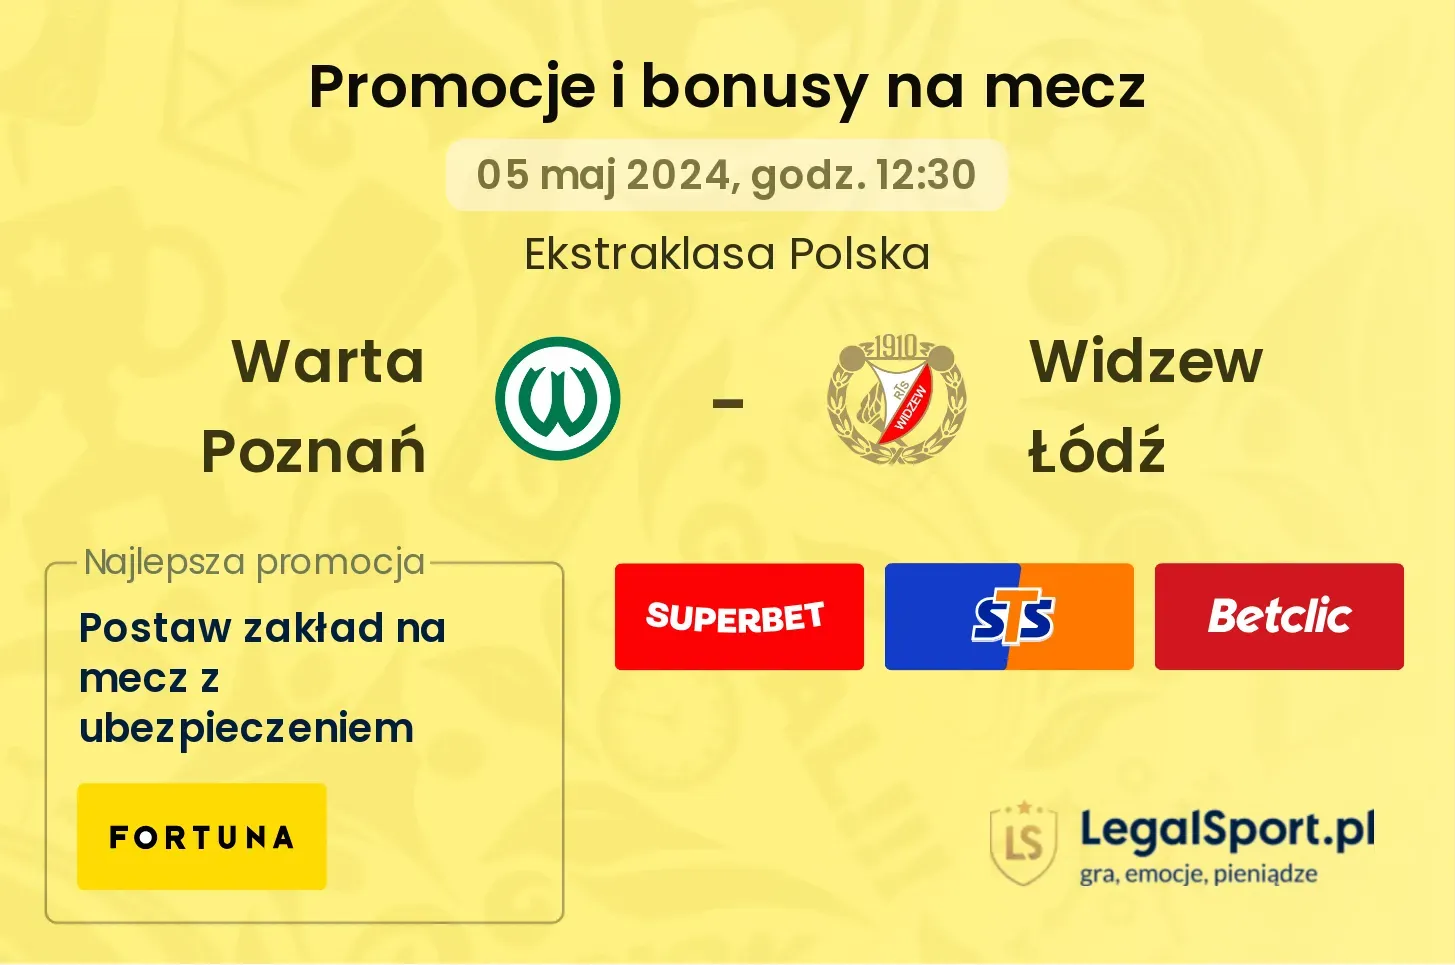 Warta Poznań - Widzew Łódź promocje bonusy na mecz